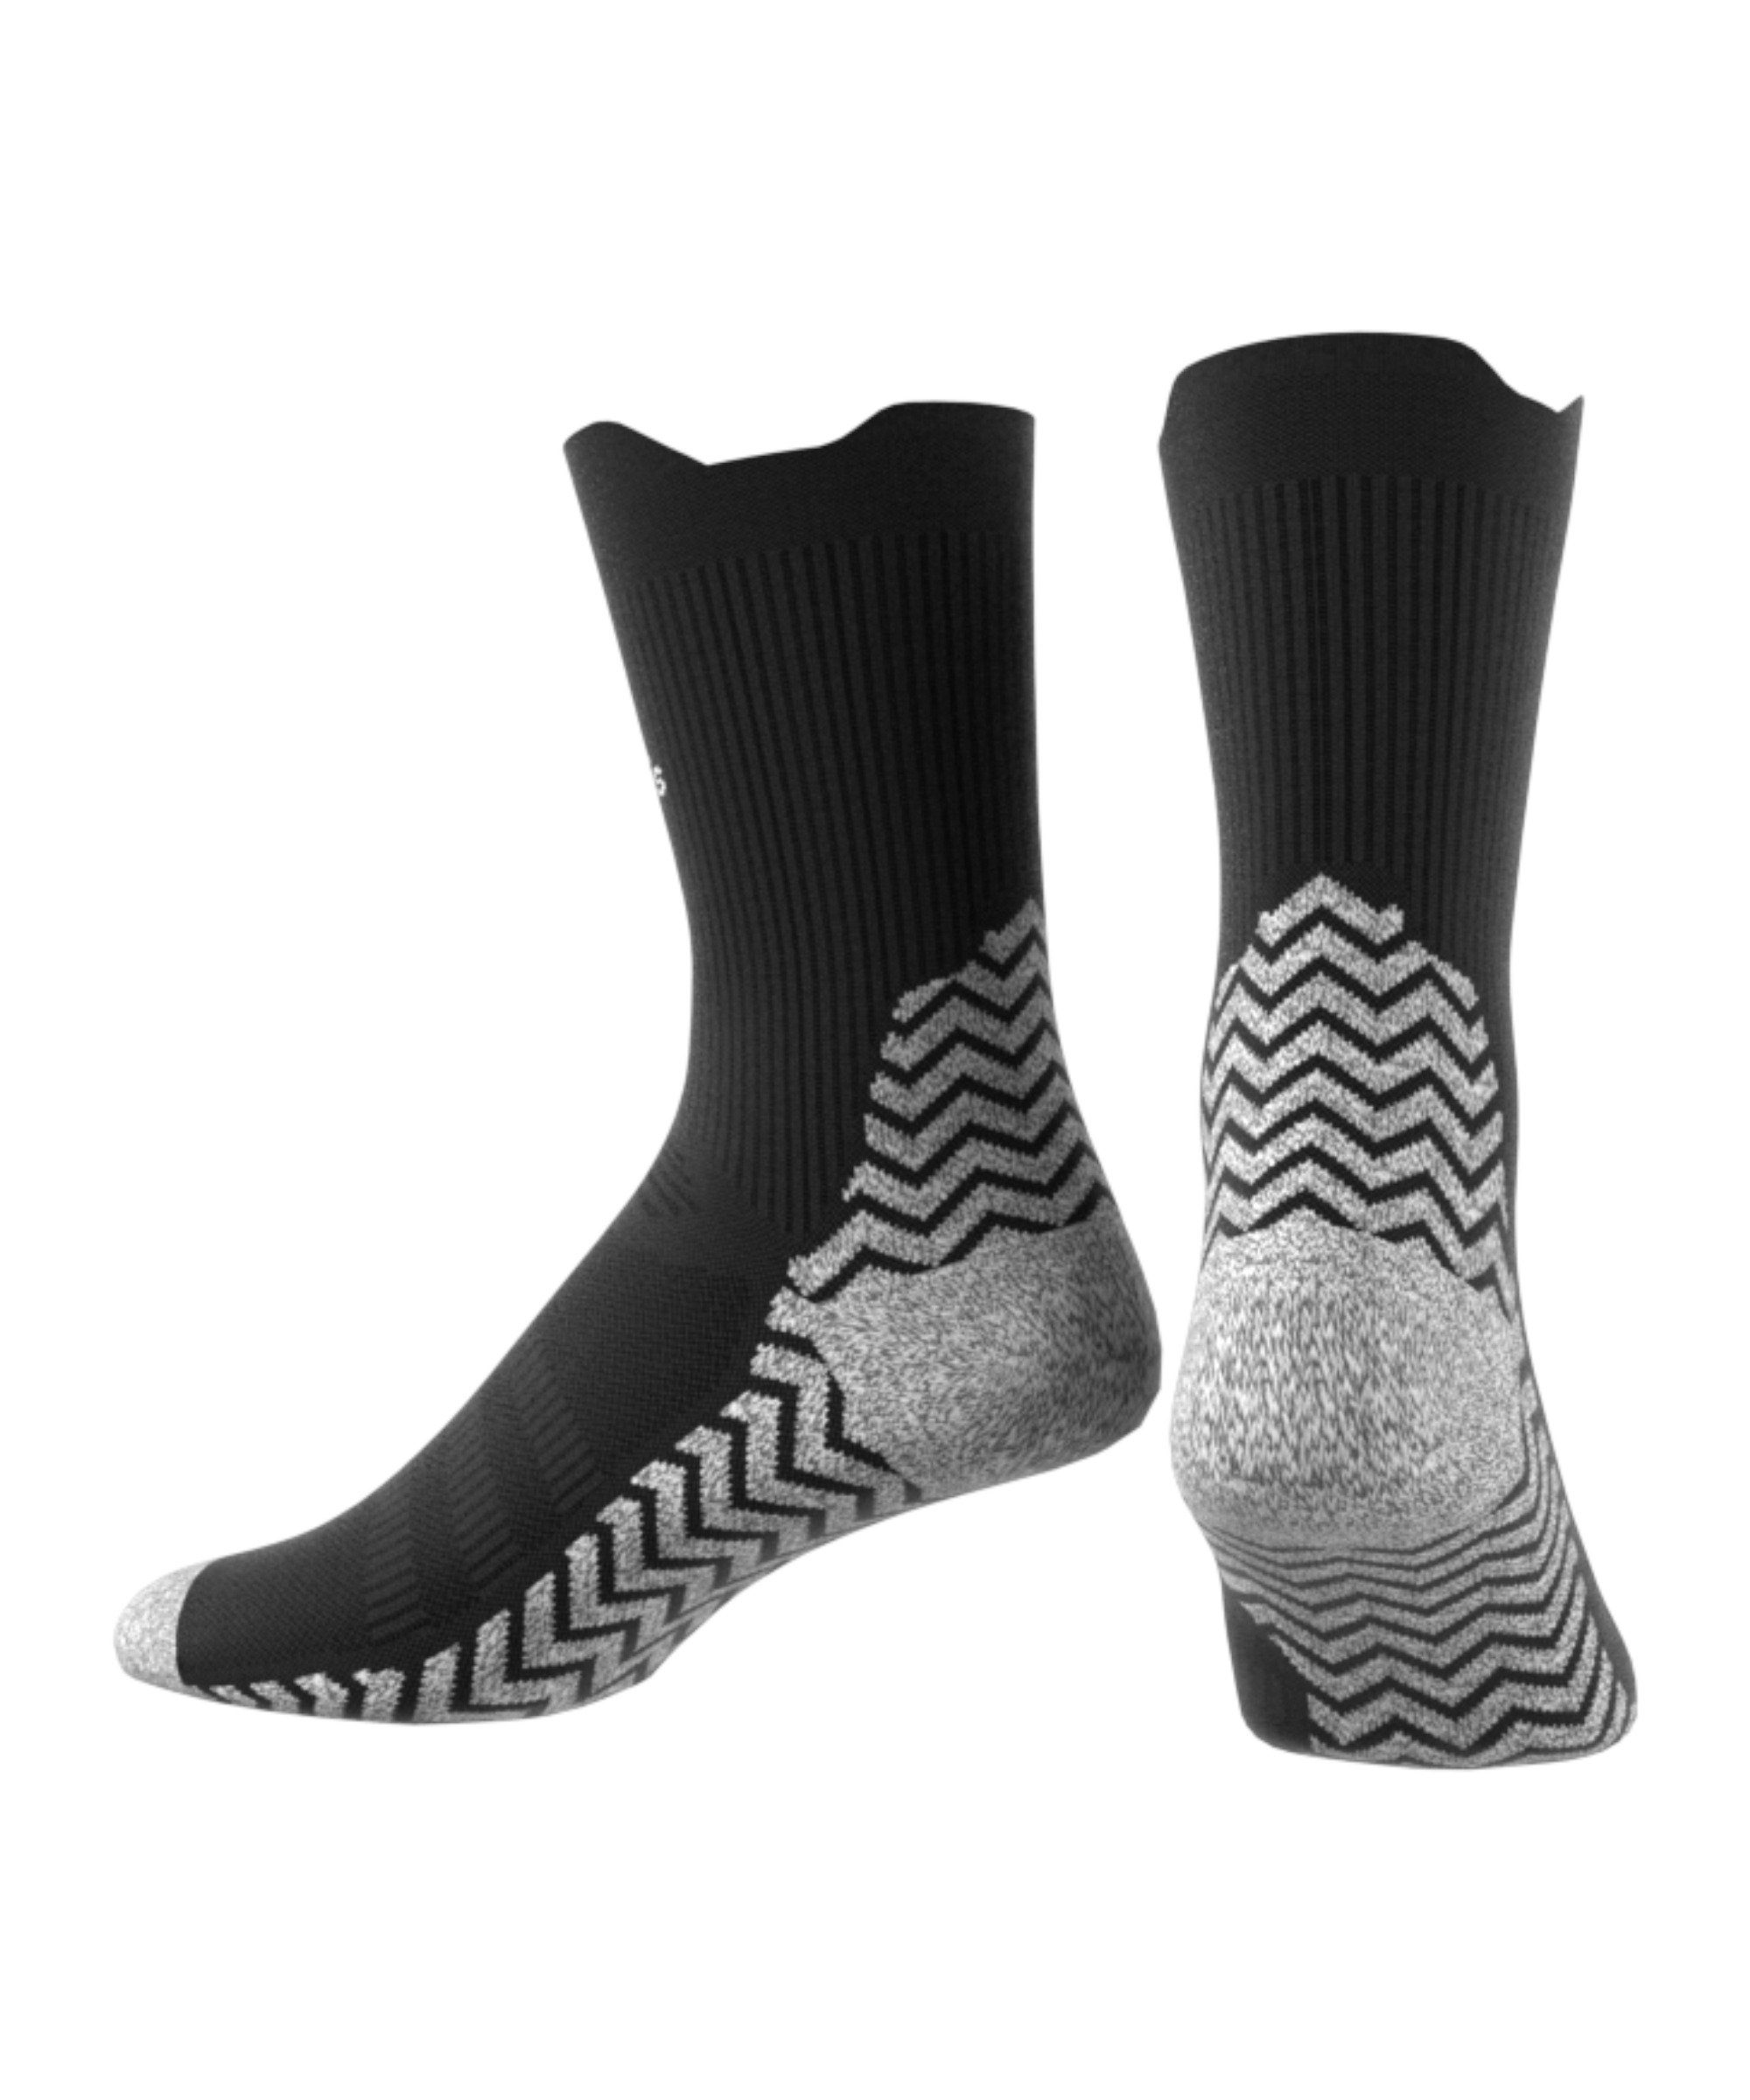 Sportsocken Performance Cover-Up default Socken adidas